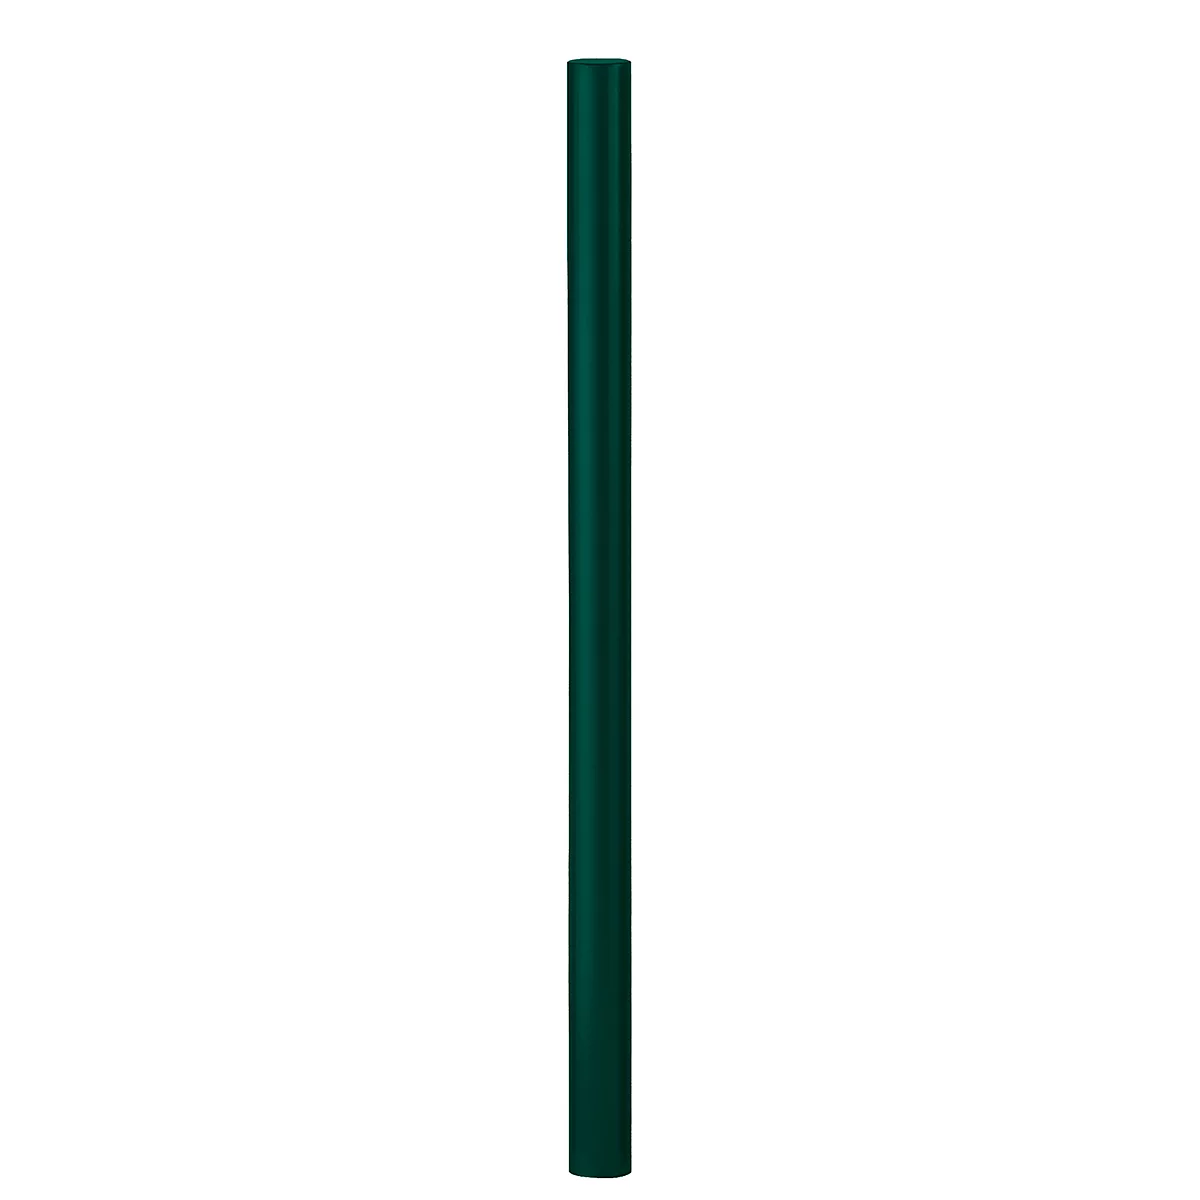 Poste de fijación de cabeza plana para papeleras, con anclaje al suelo, verde